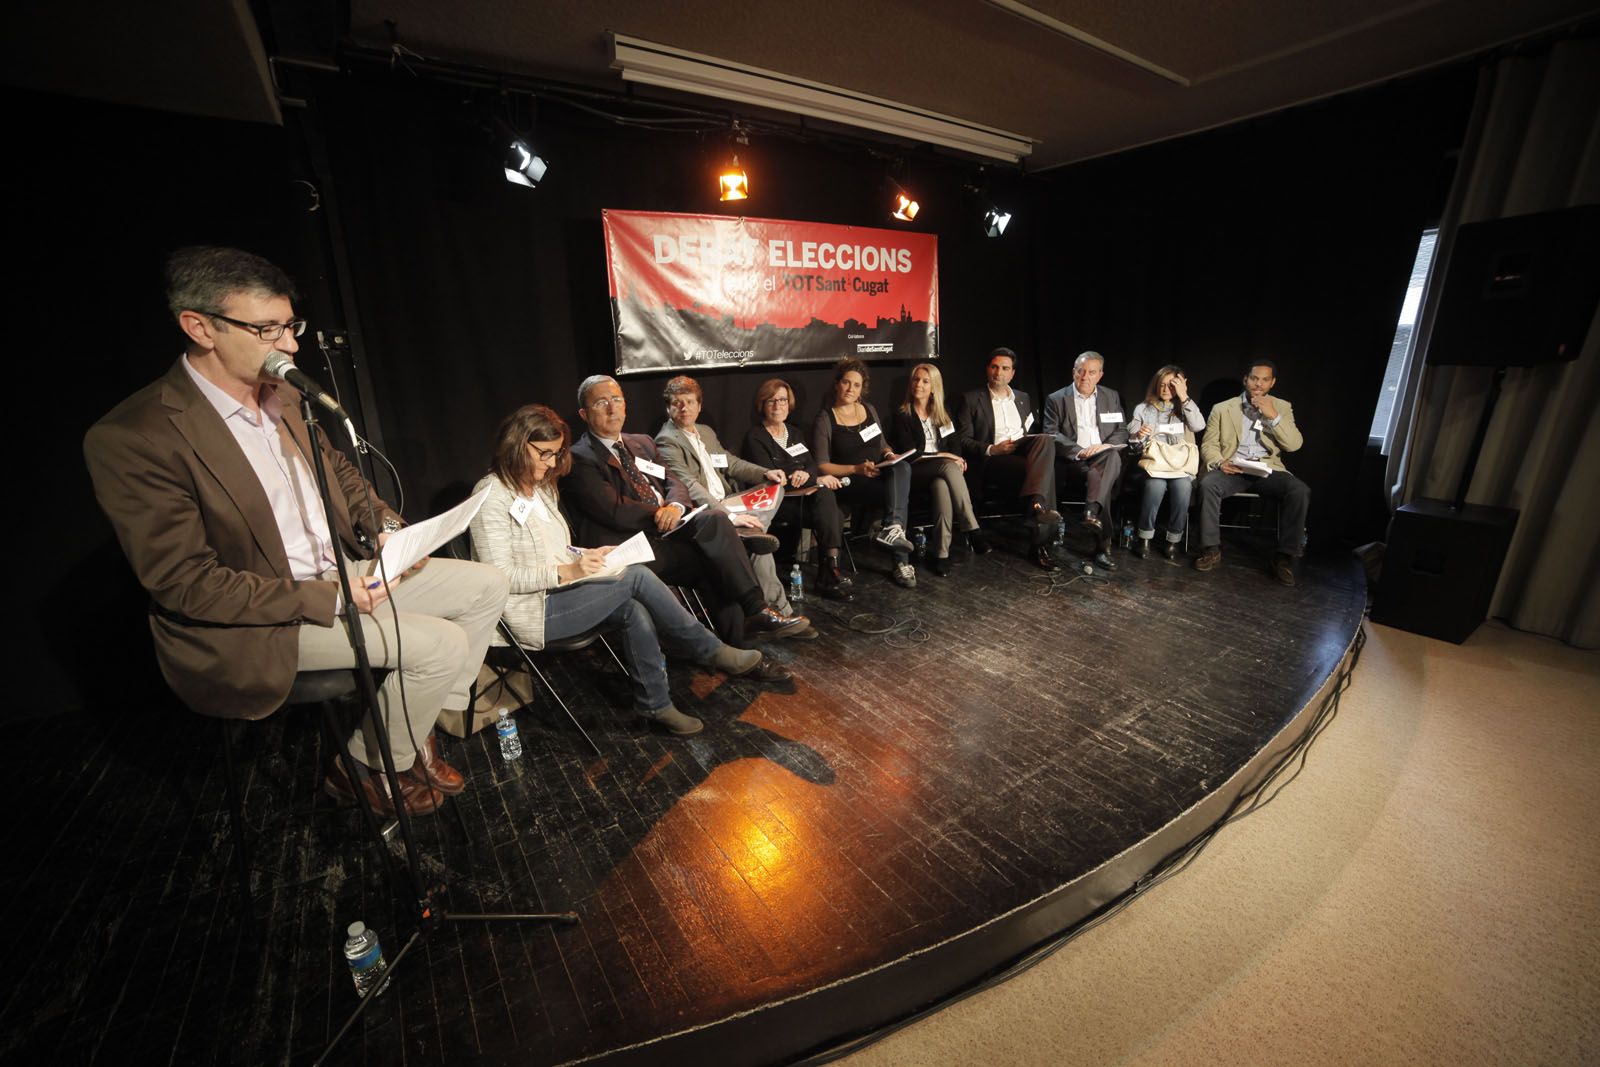 Els deu candidats a l'alcaldia, a l'escenari de la Casa de Cultura durant el debat electoral. FOTO: Artur Ribera